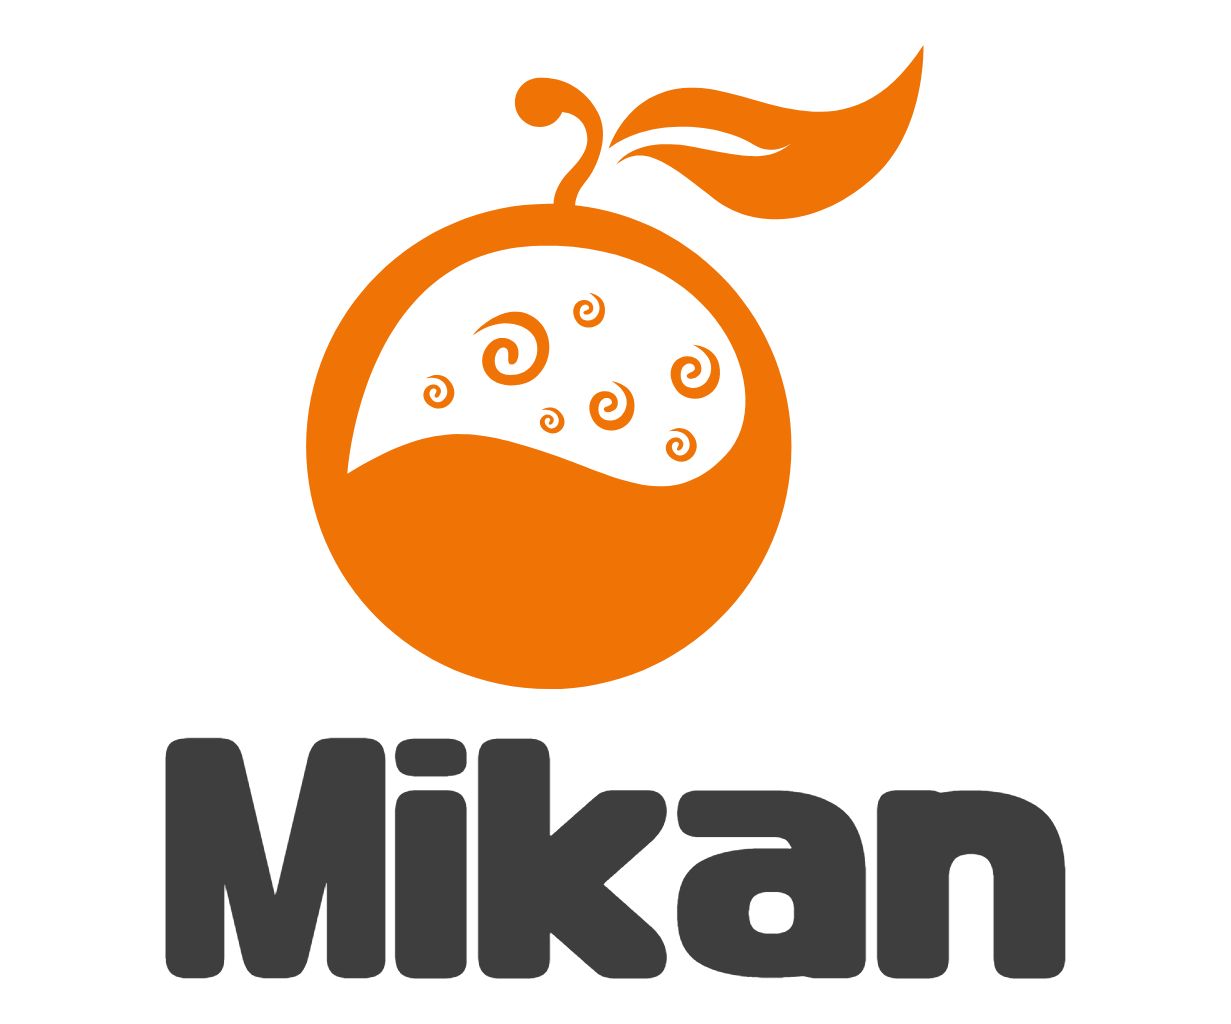 Mikan5 Goldライセンス インジケーター・電子書籍